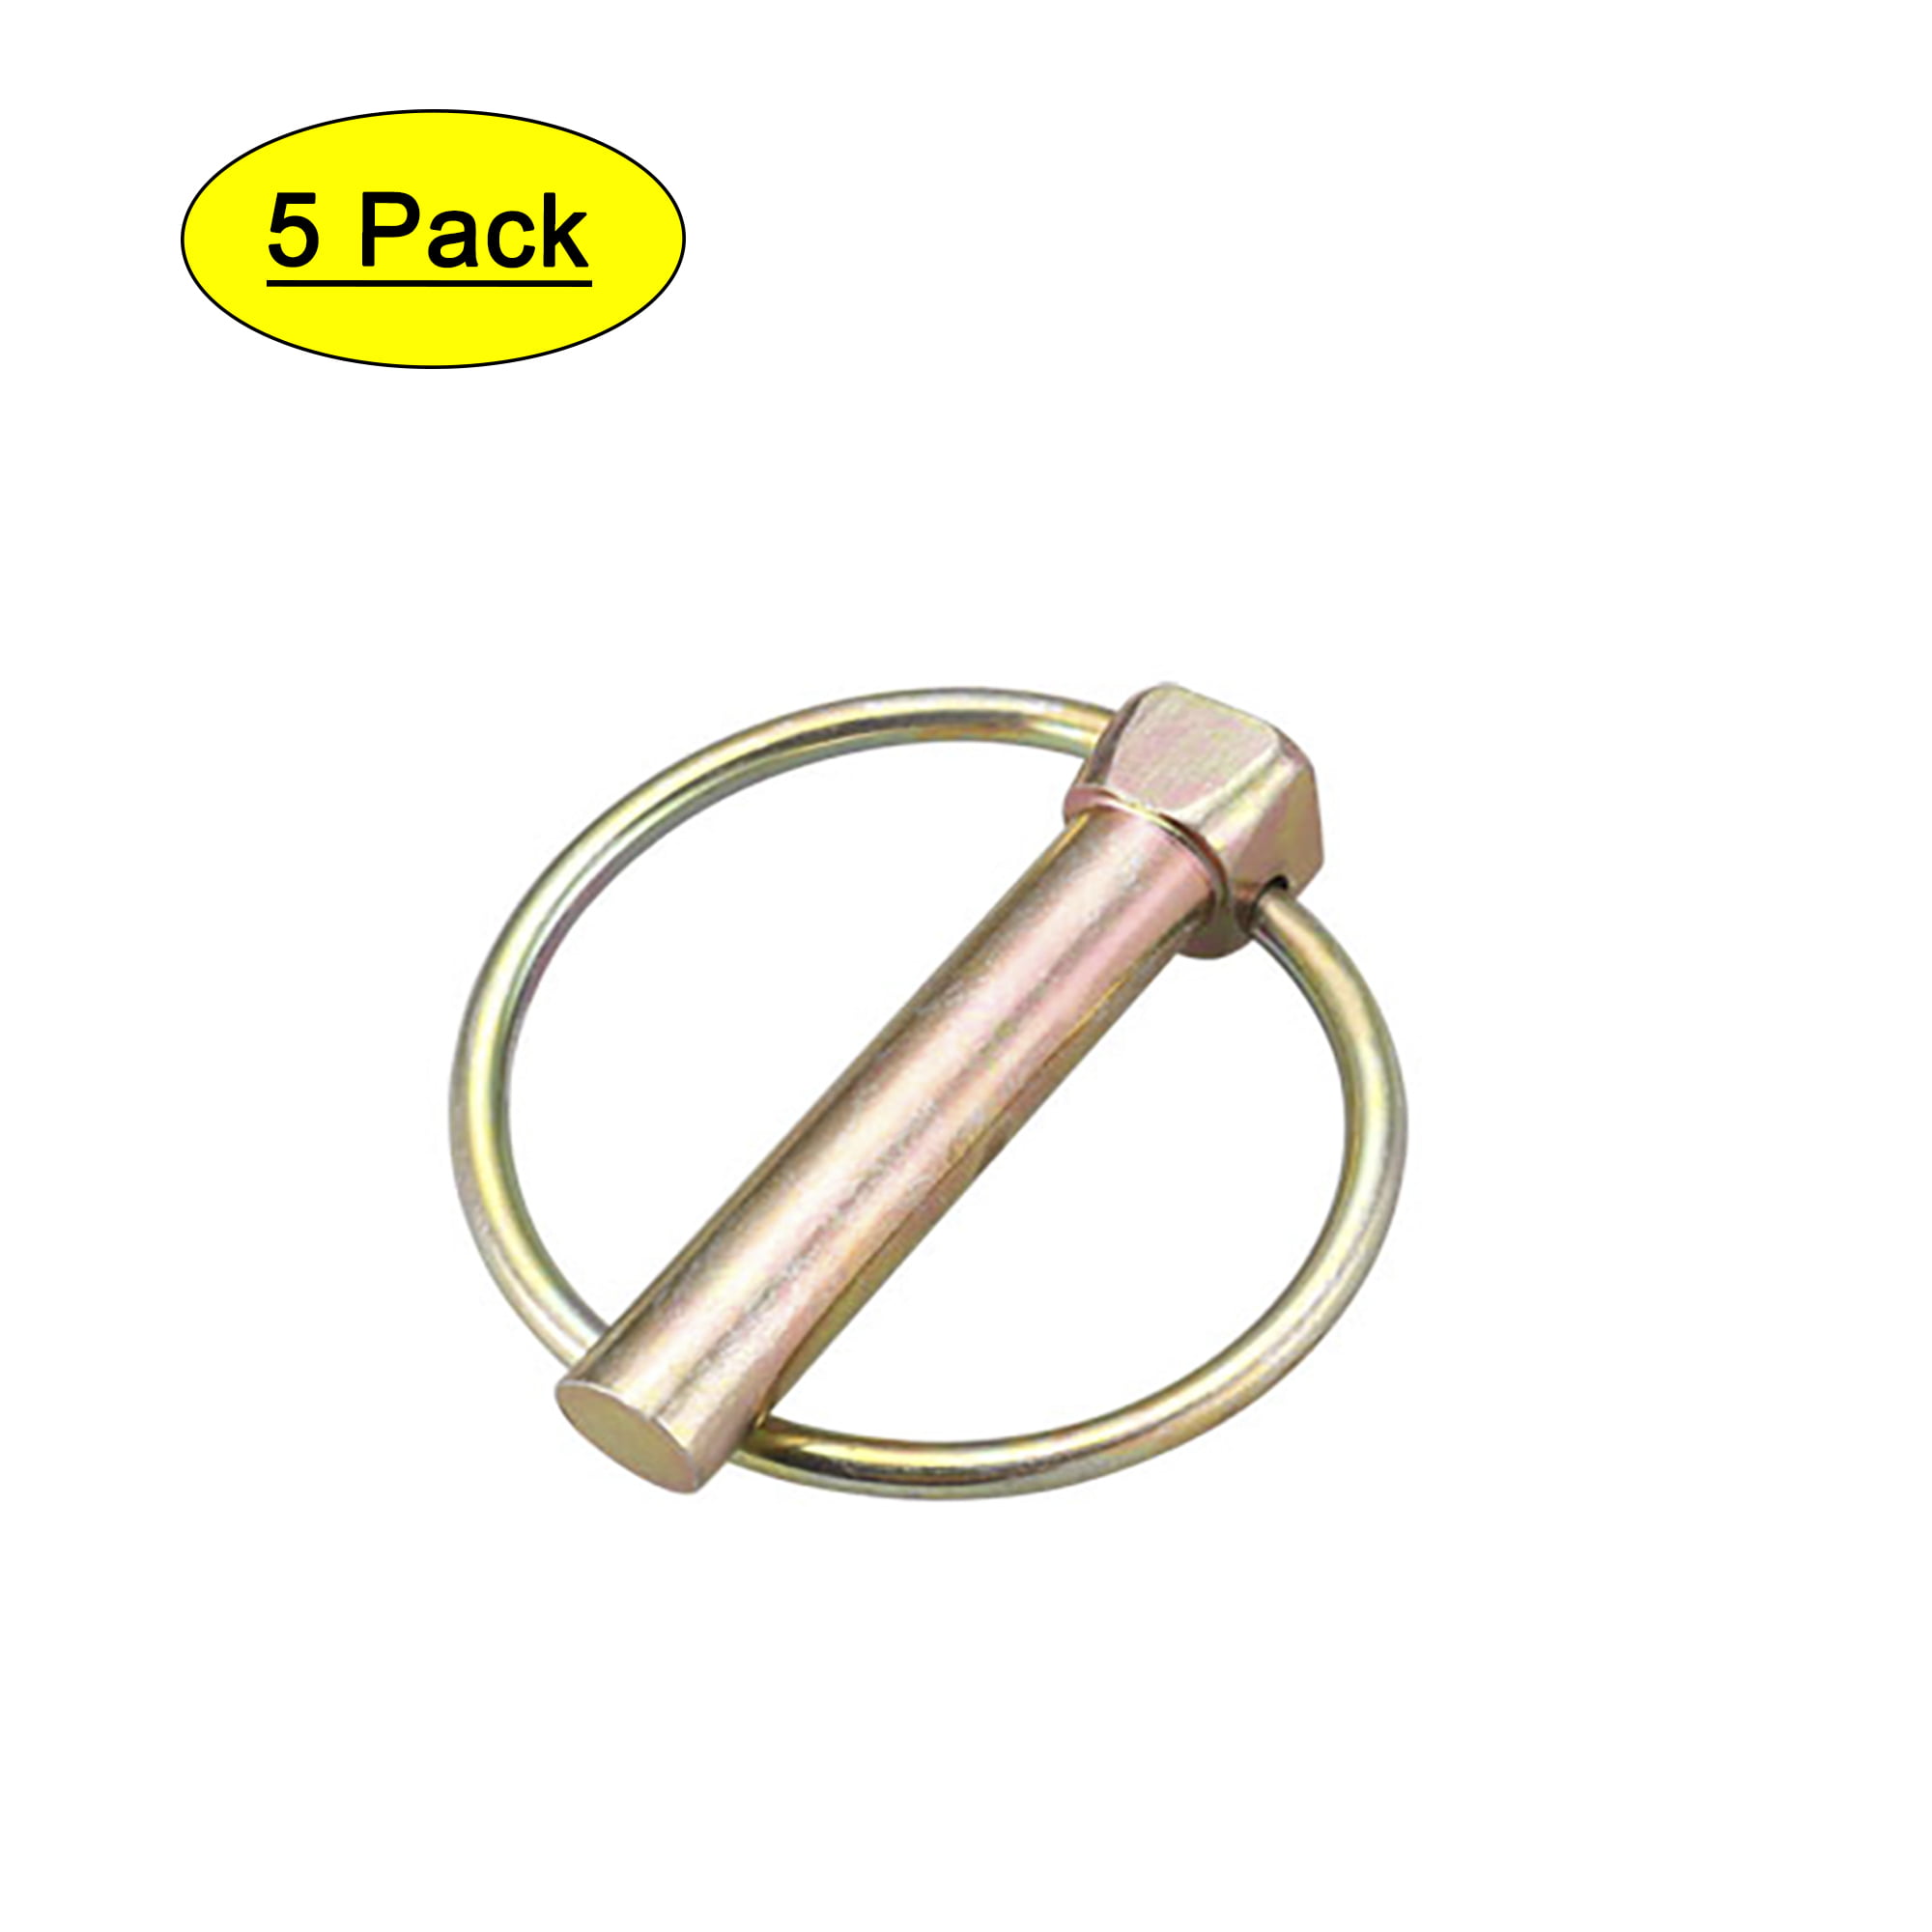 30 Pcs Lynch Pin Lynch Pin Assortment Kit Linch Pin with Ring Heavy Duty Lynch P 